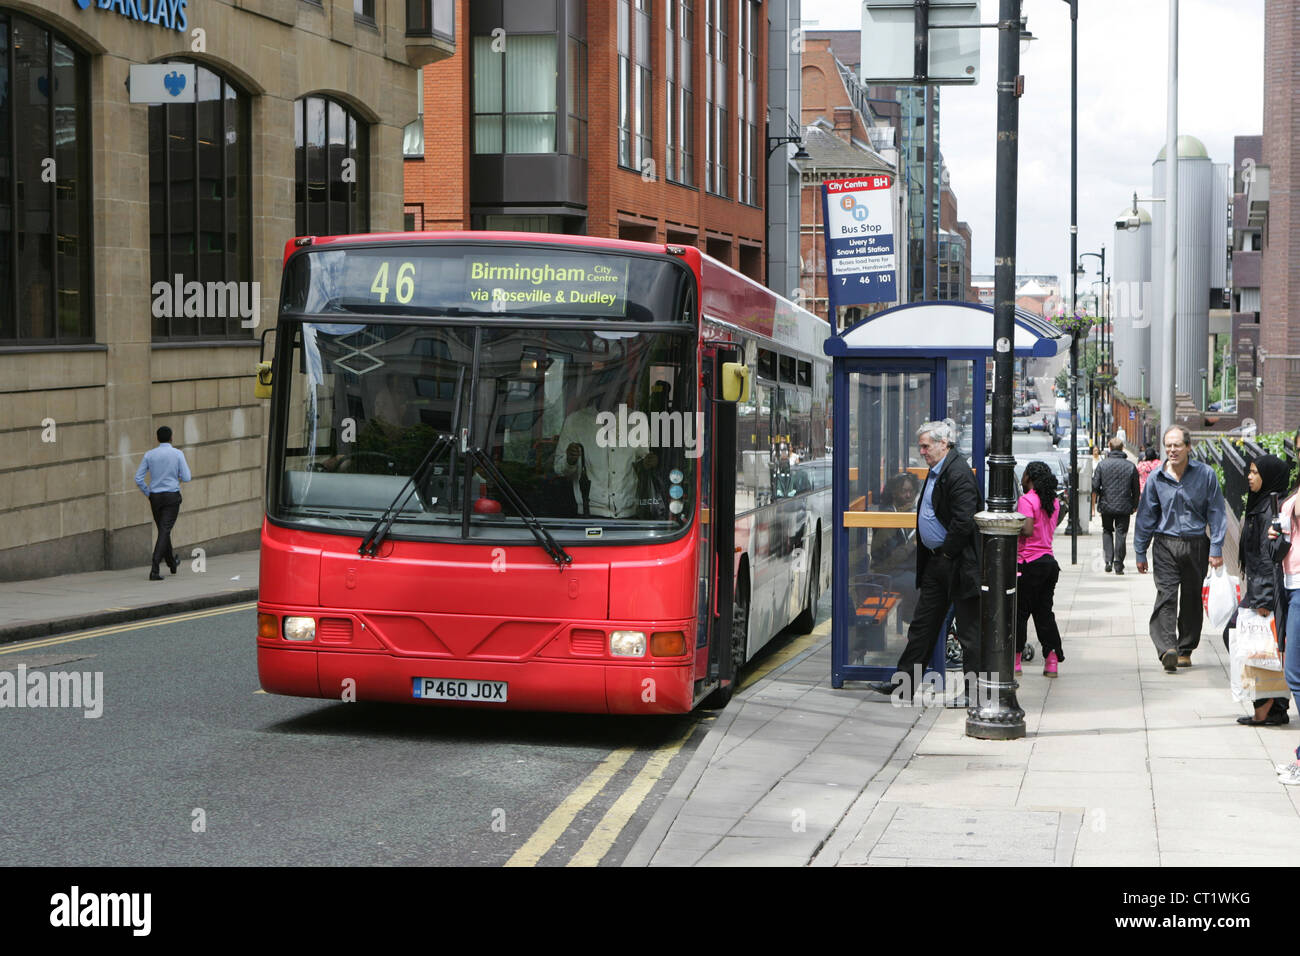 West Midlands voyage bus s'arrête à livery street snow hill juin 2012 Banque D'Images